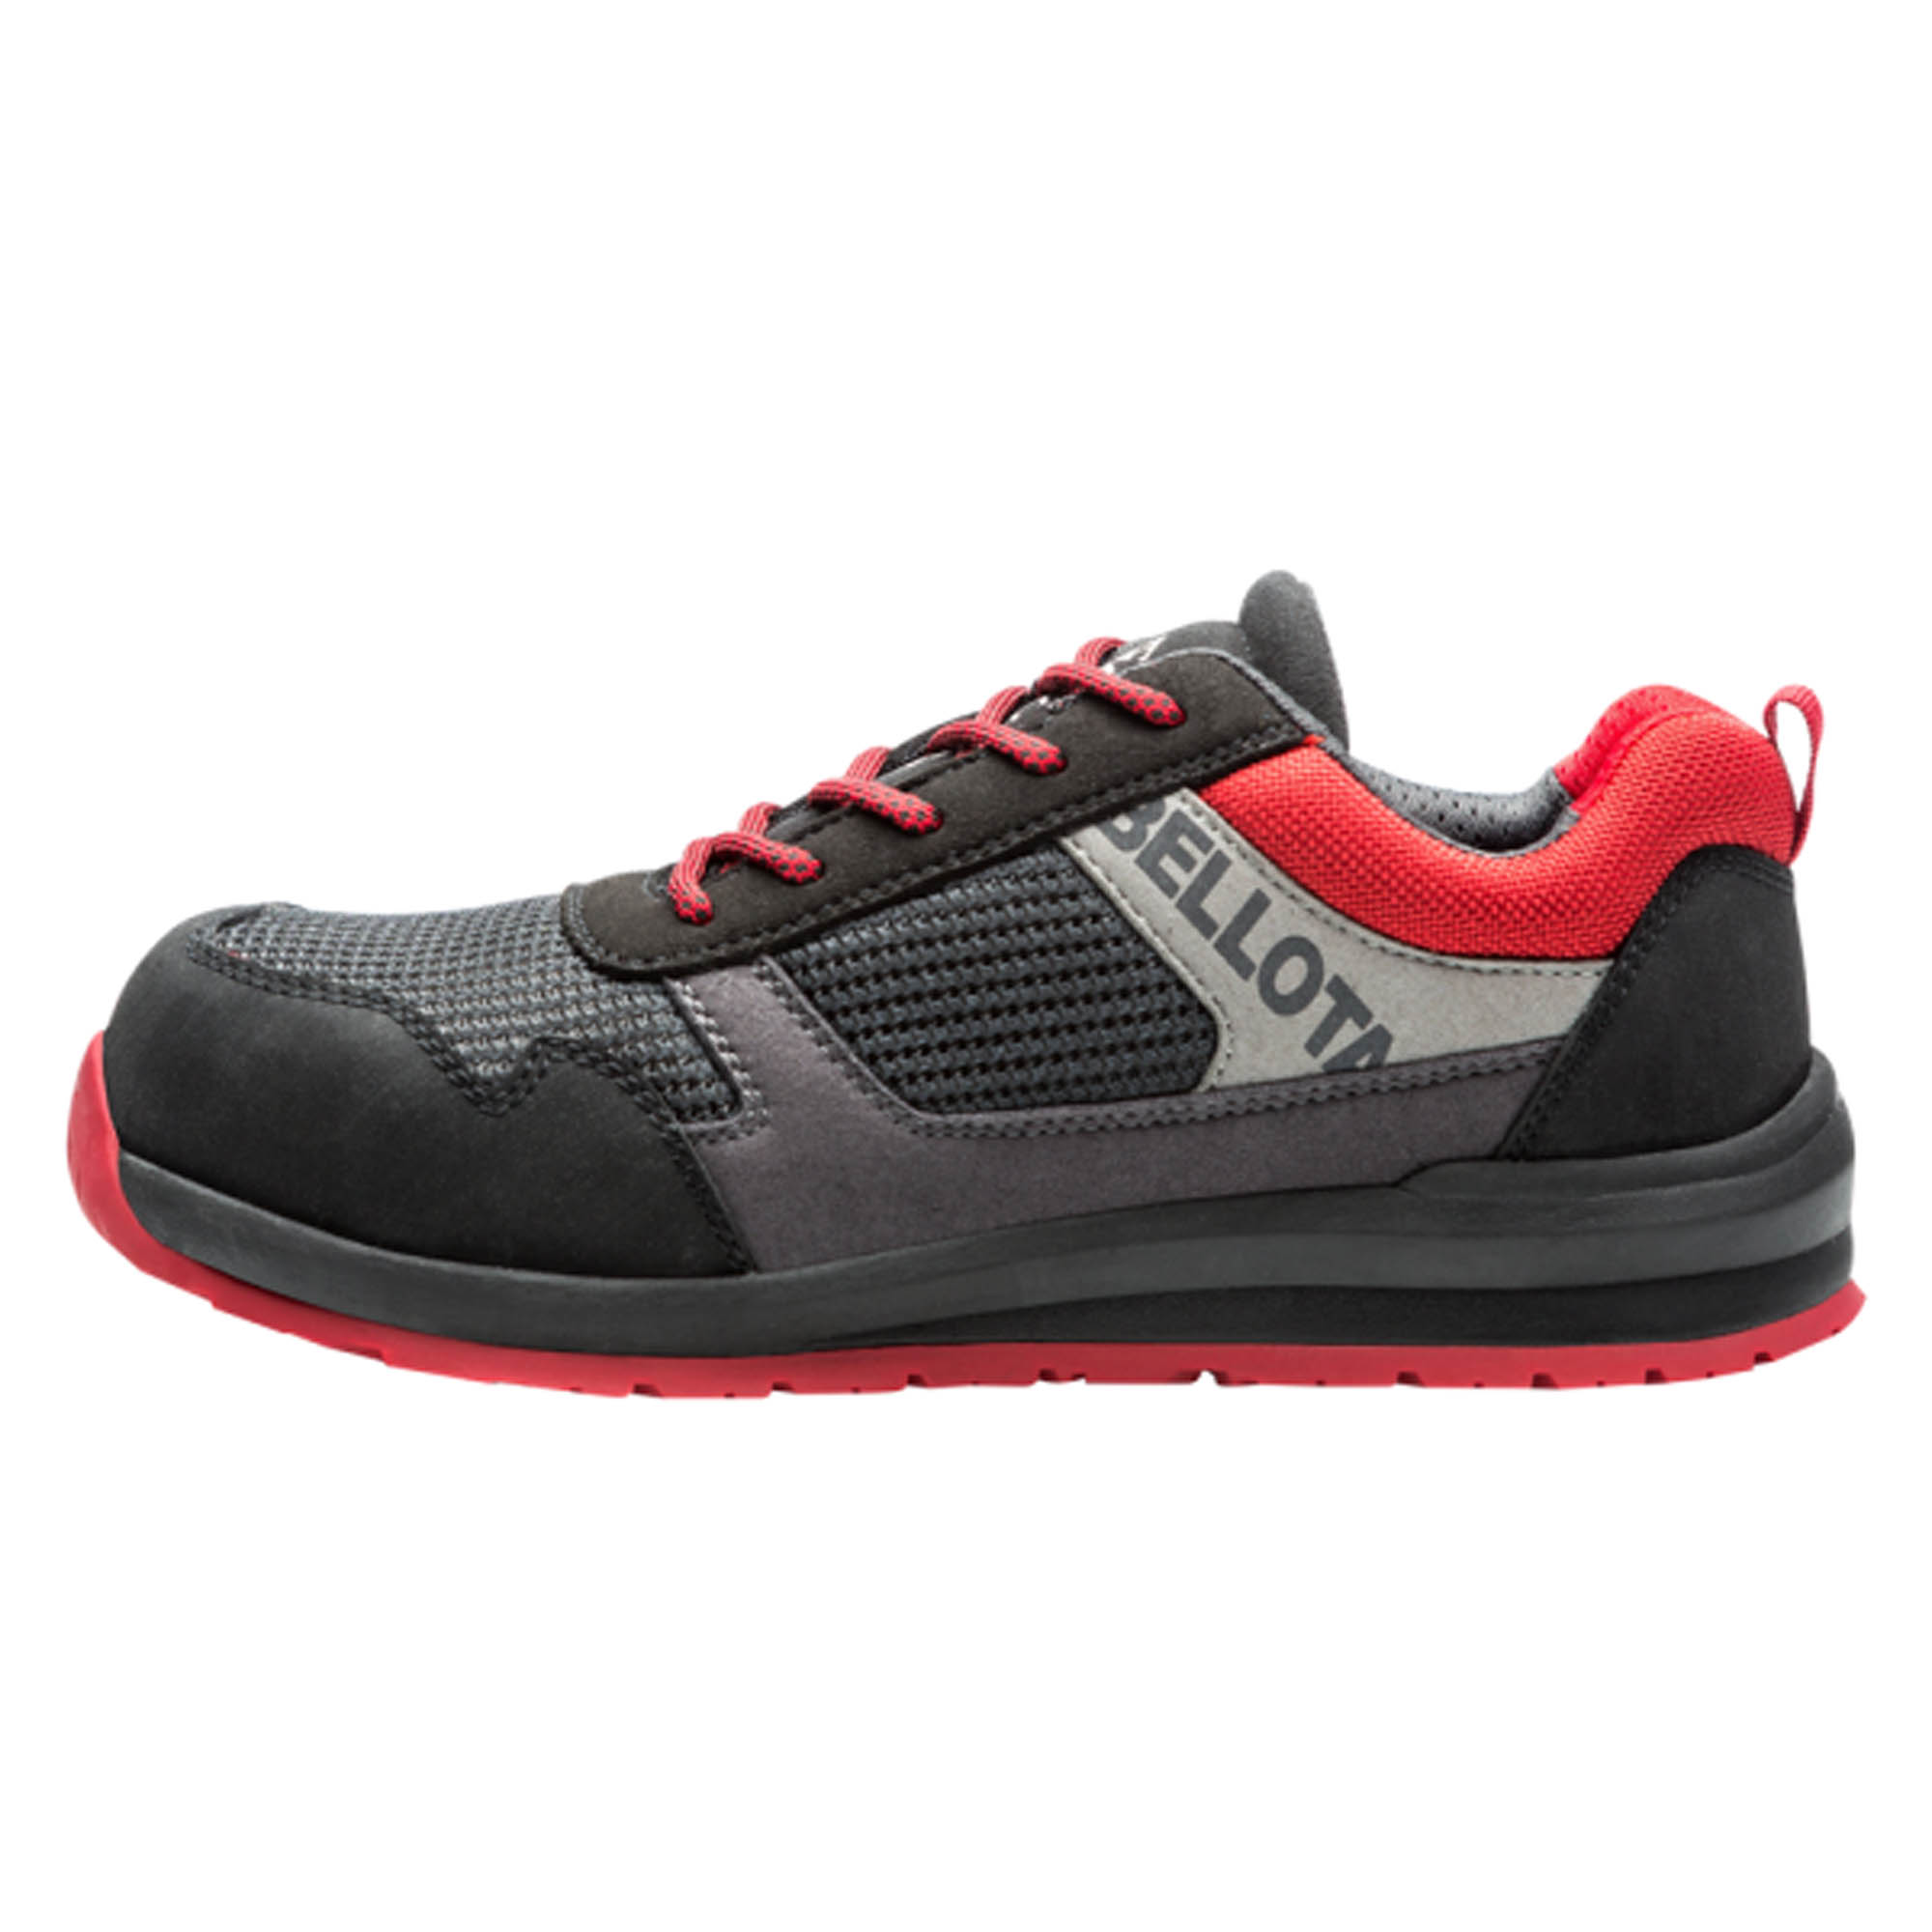 Comparación mezcla atravesar ⇒ Comprar Zapato seguridad s1p t41 negro/rojo street bellota ▷ Más de 200  tiendas ✔️